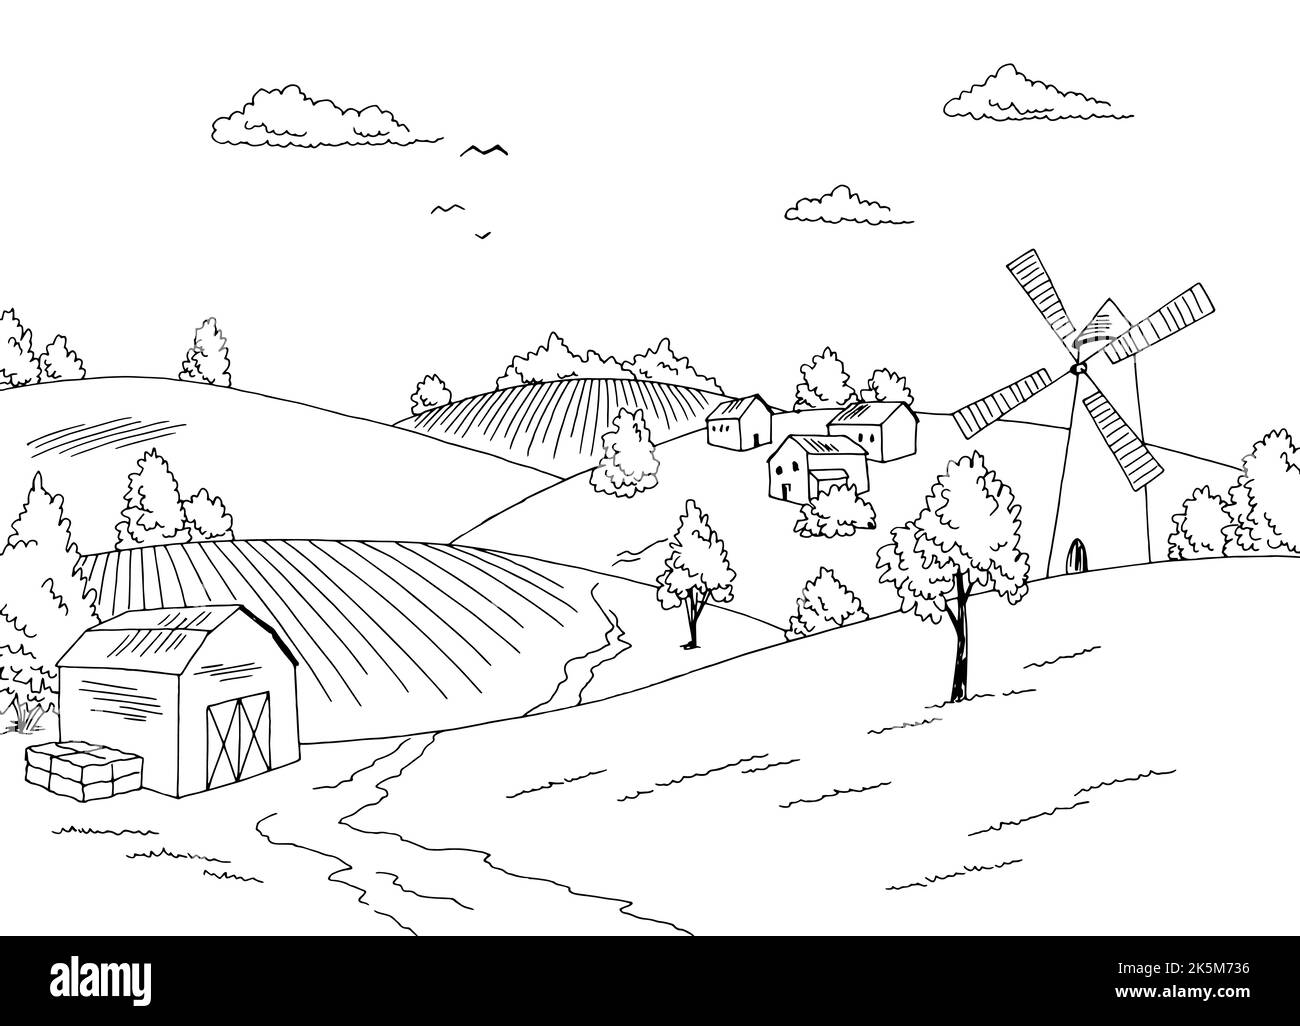 Farm field graphic black white landscape sketch illustration vector Stock Vector